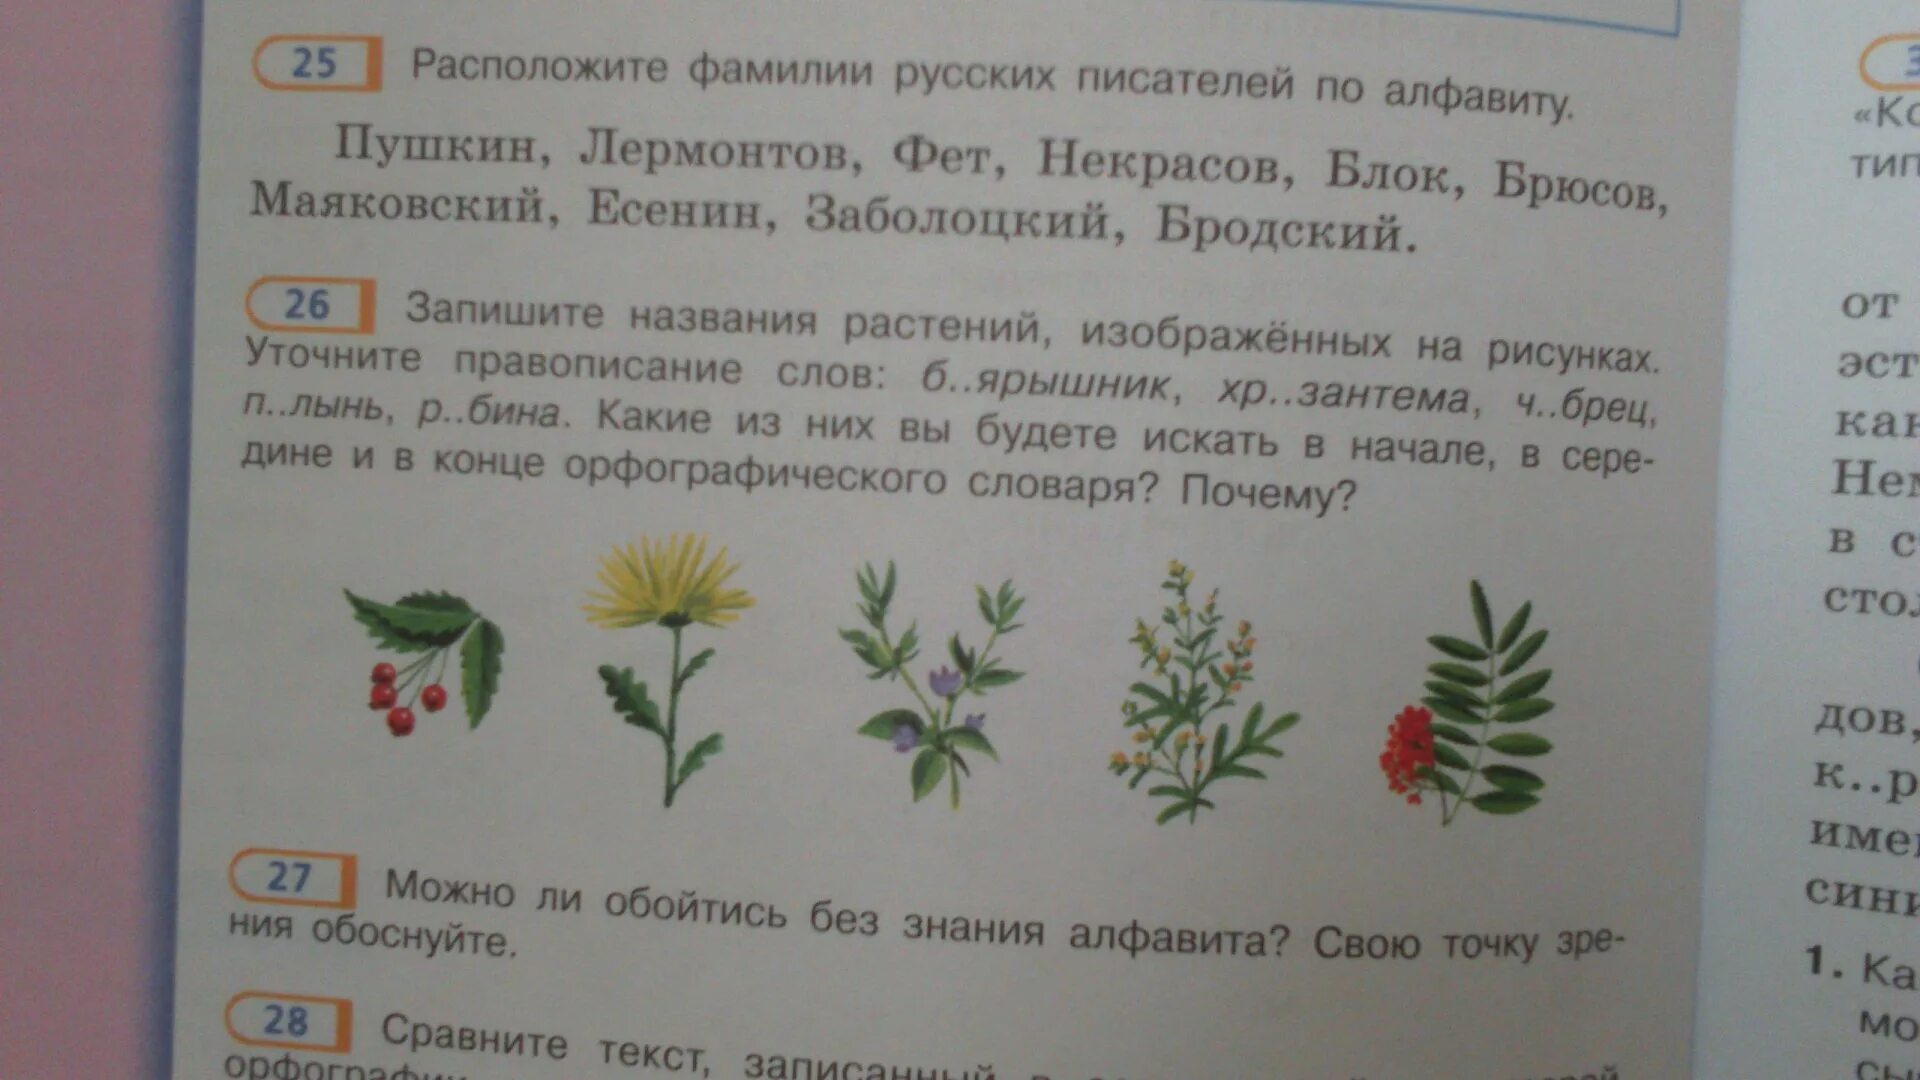 Подчеркнуть слова трава цветок. Запиши названия растений. Растения из орфографического словаря. Названия растений по русскому языку. Слова называющие растения.